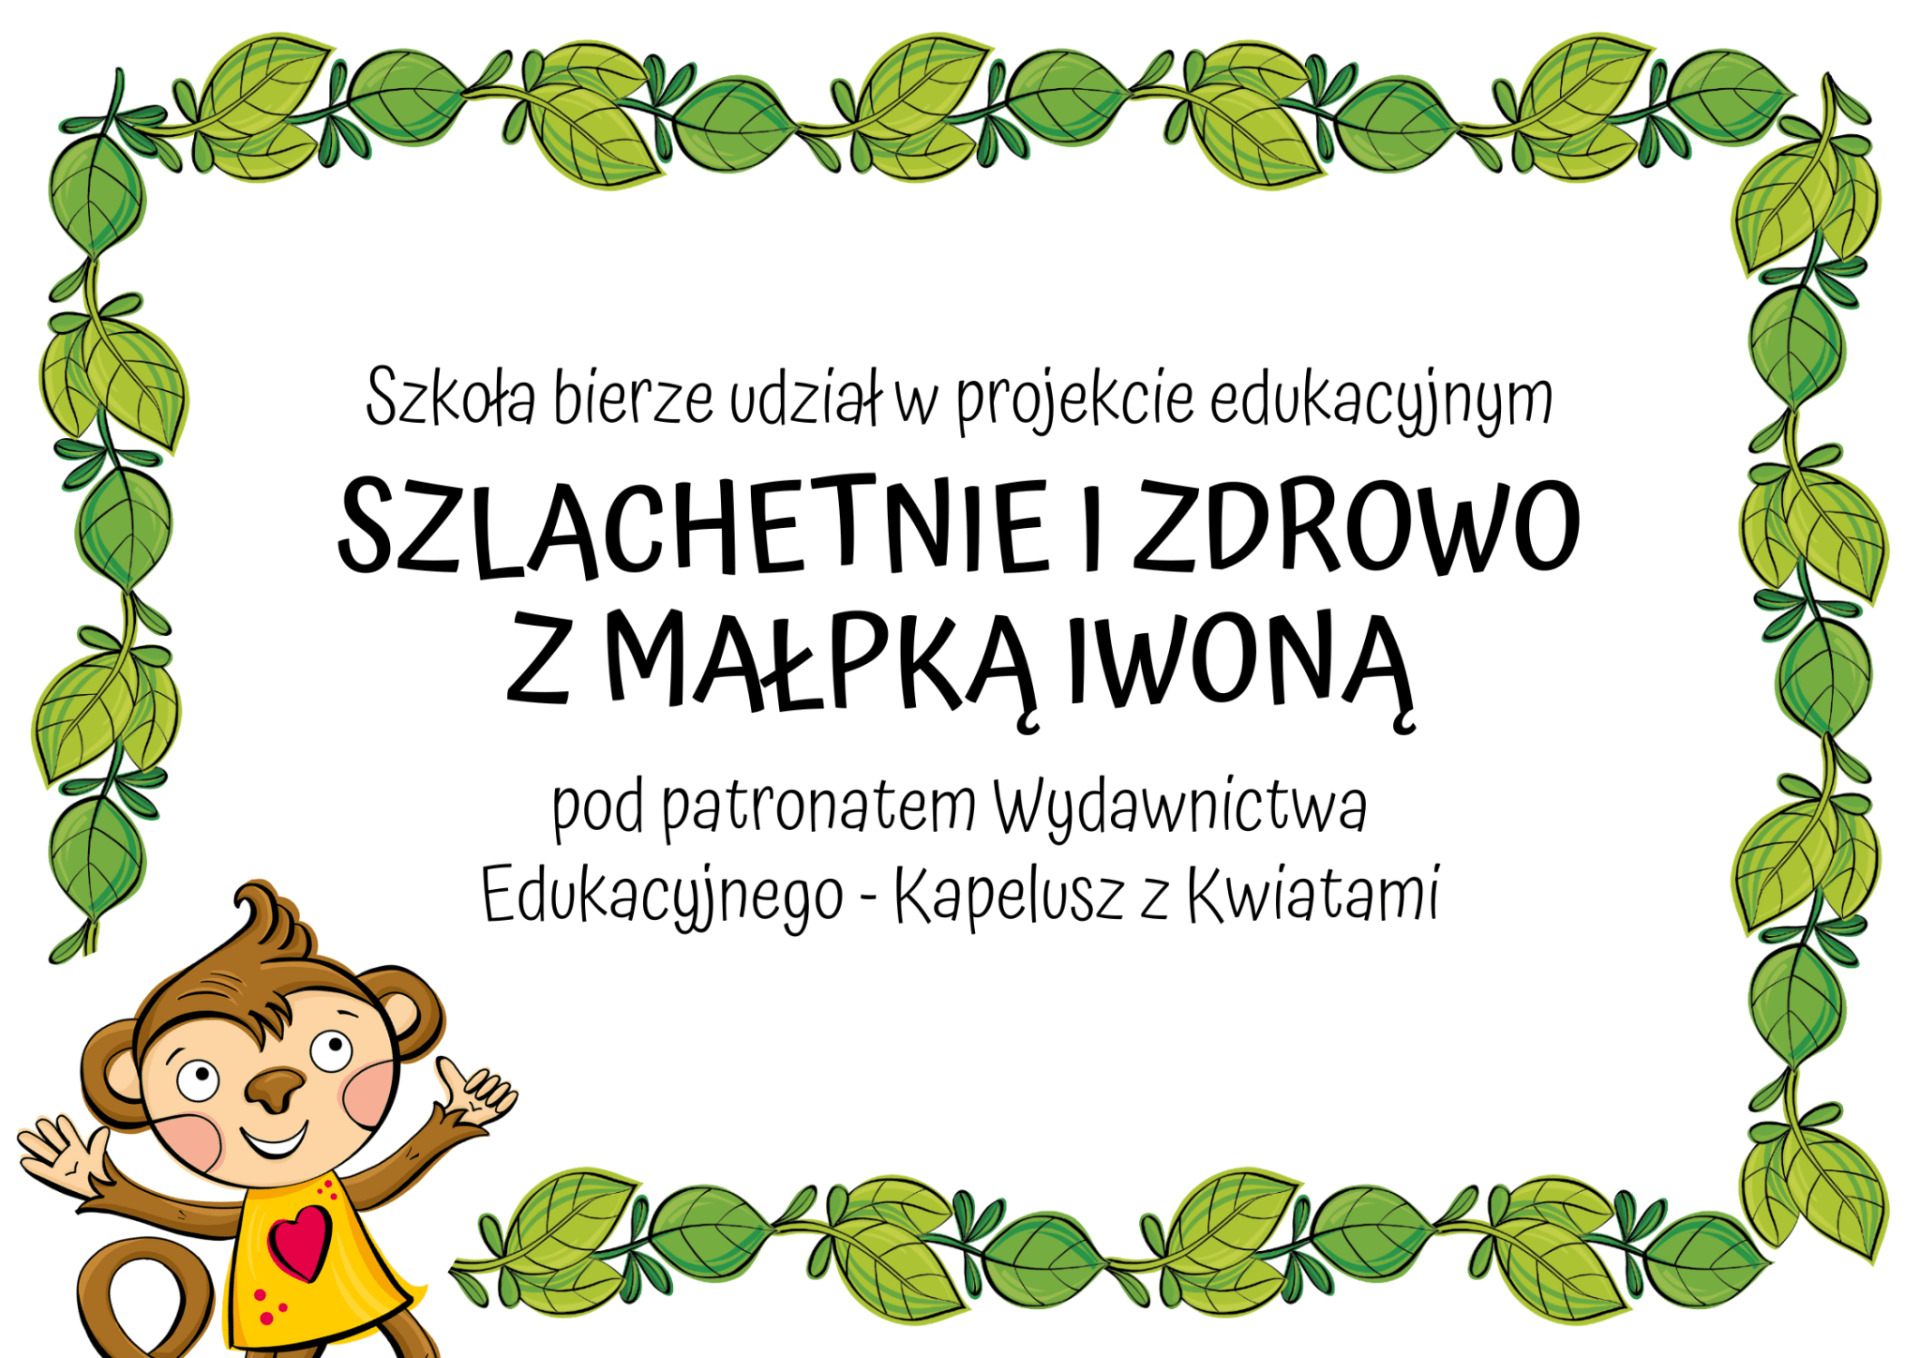 Ogólnopolski Projekt Edukacyjny SZLACHETNIE I ZDROWO Z MAŁPKĄ IWONĄ - Obrazek 1